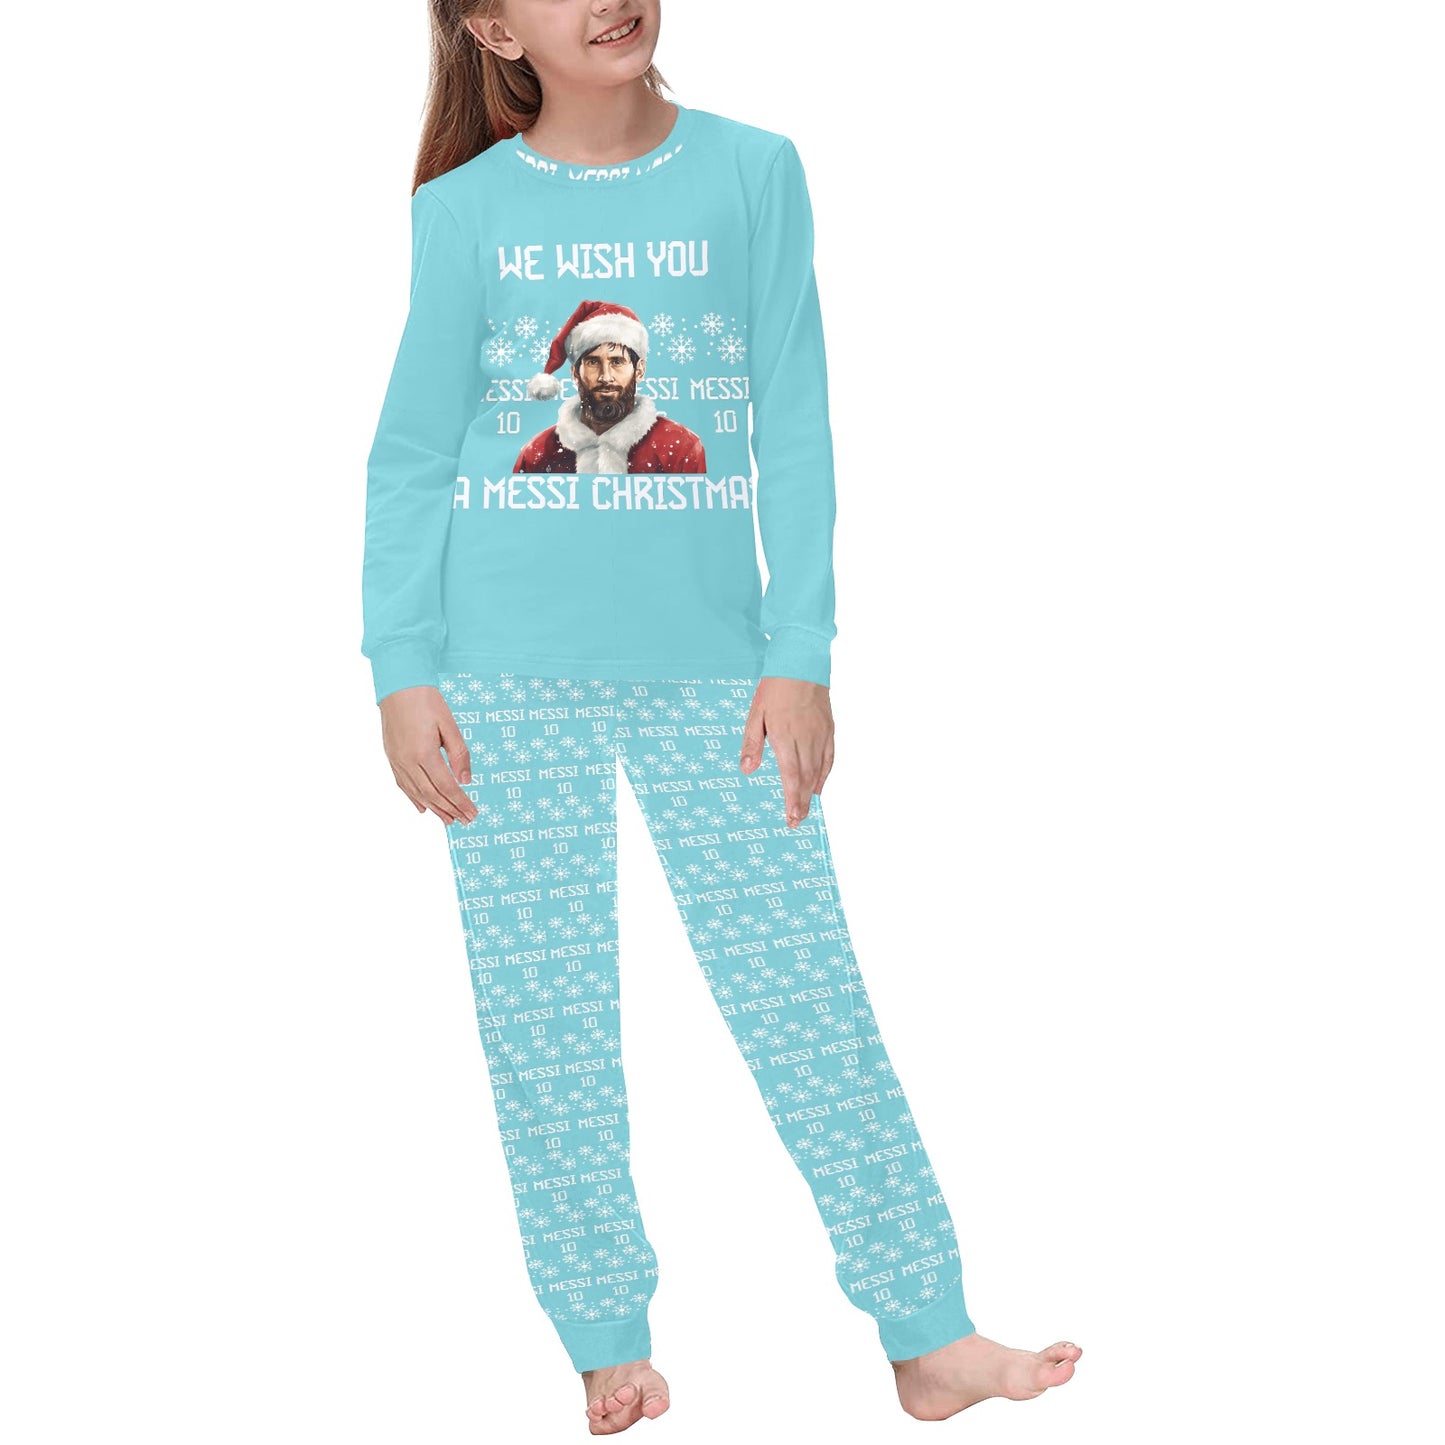 🎅Messi Christmas Kids Pajamas 🎅 Matching Family Pajamas 🎅Soccer Christmas gift for kids